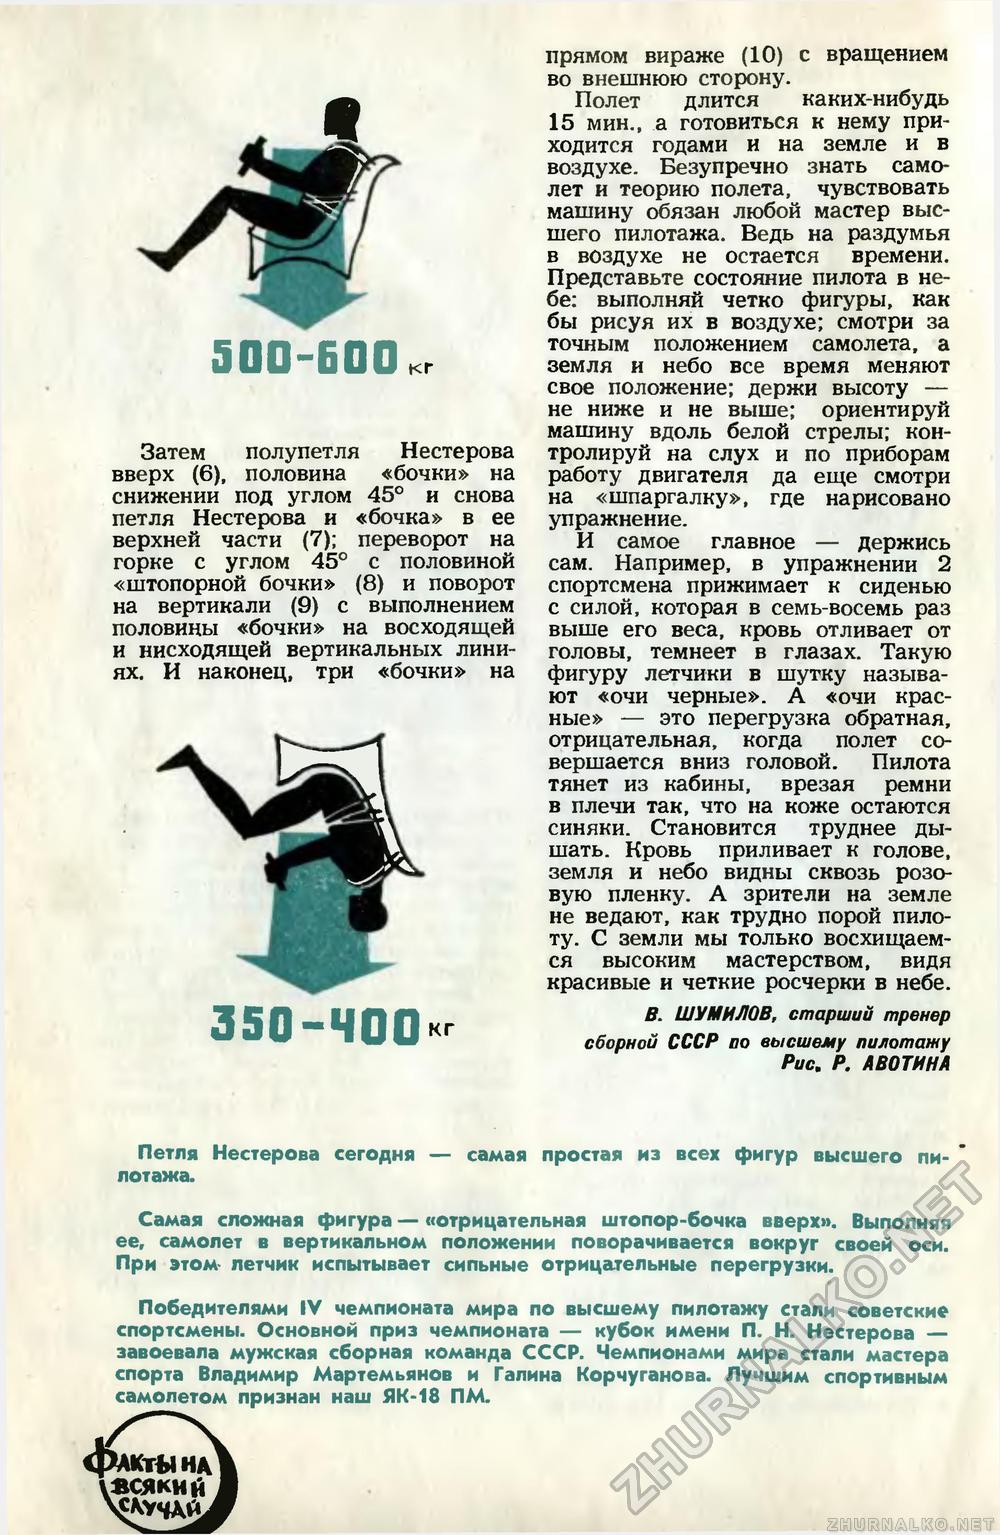   1966-11,  28